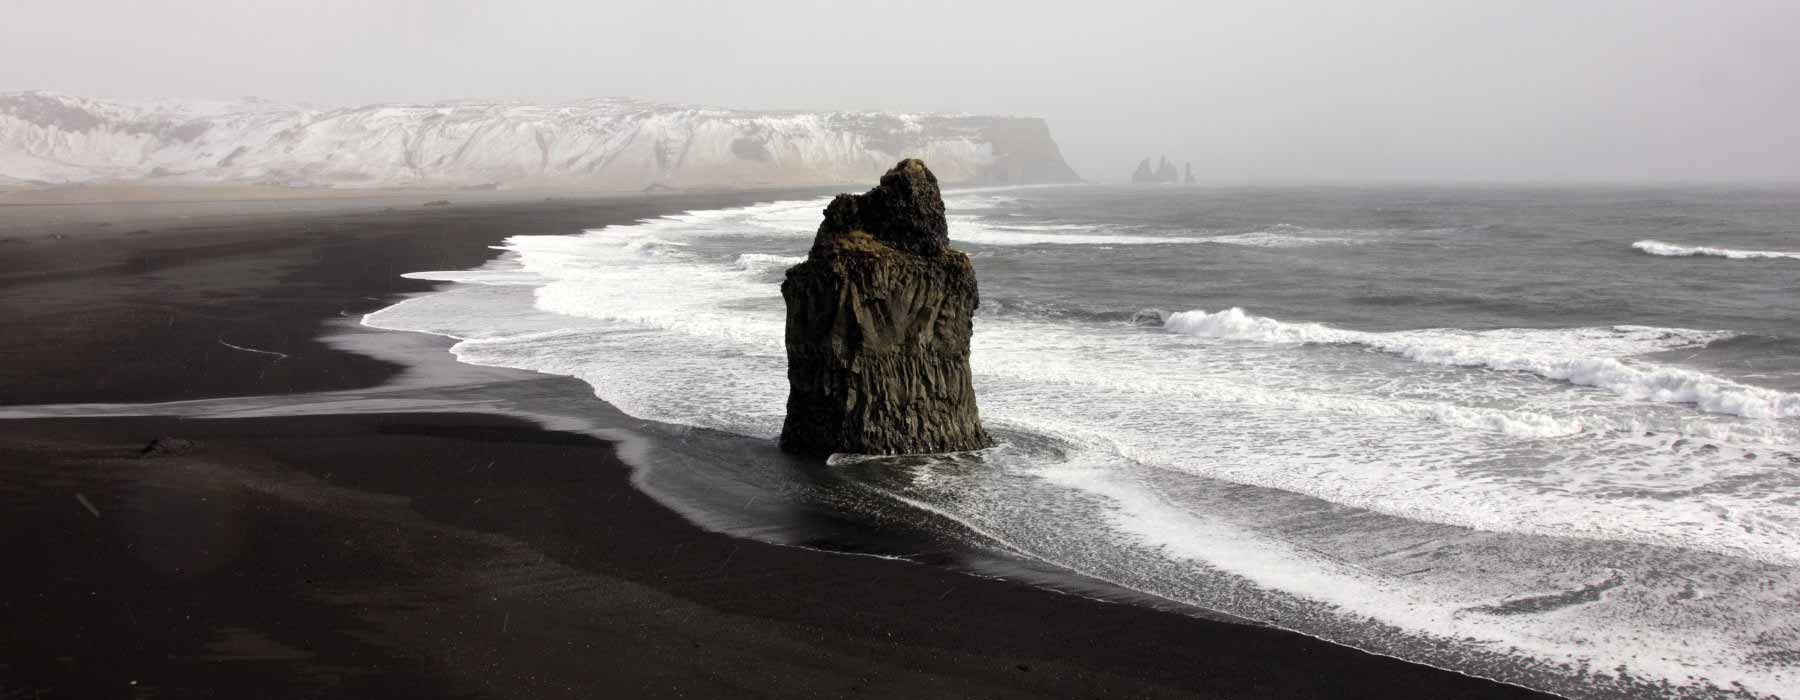 Iceland<br class="hidden-md hidden-lg" /> February Holidays